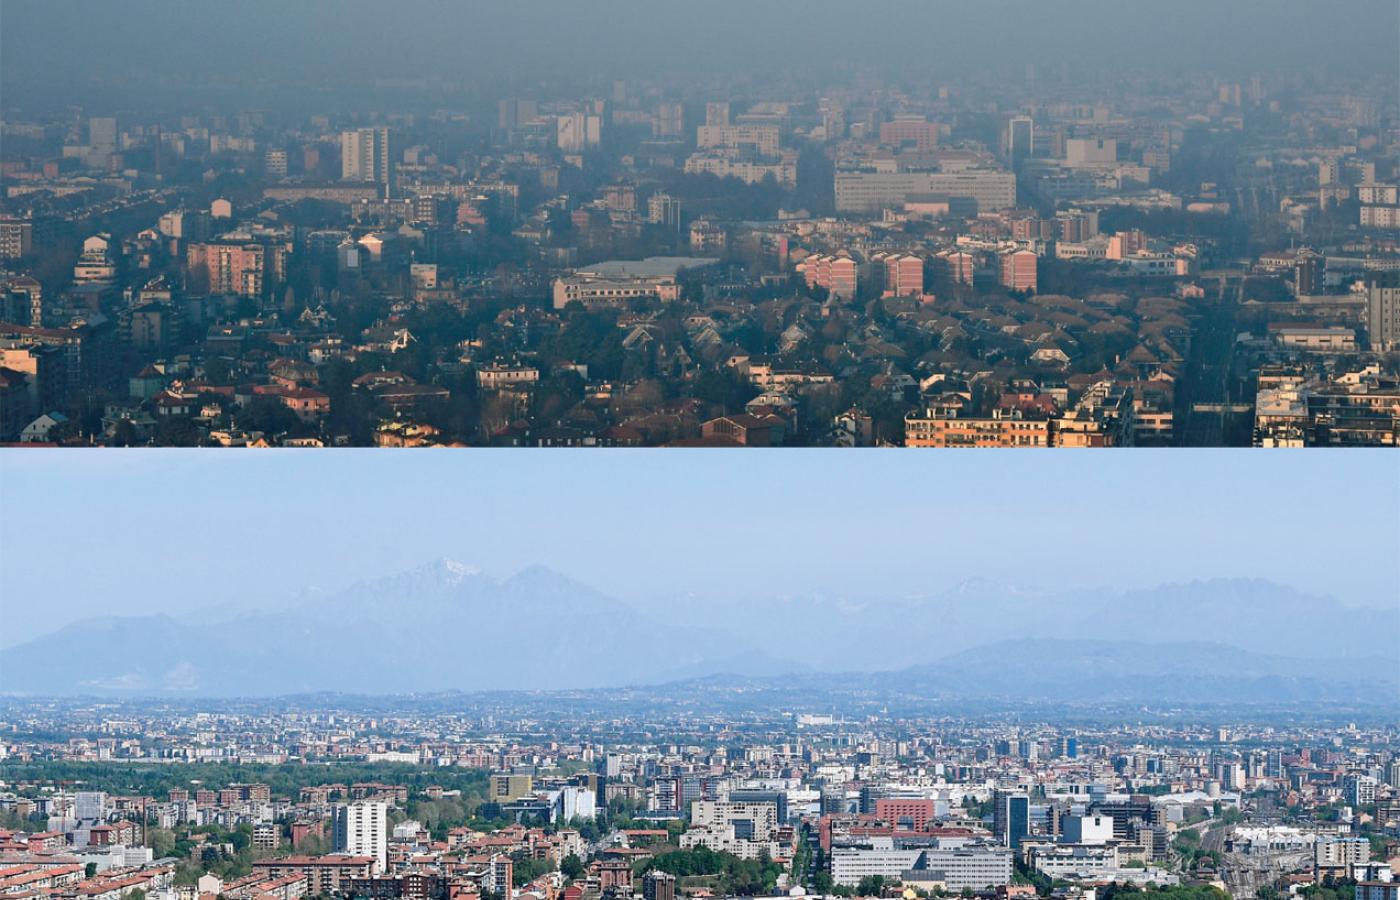 Oto jak lockdown poprawił przejrzystość powietrza. Na zdjęciach Mediolan w styczniu i w połowie kwietnia.